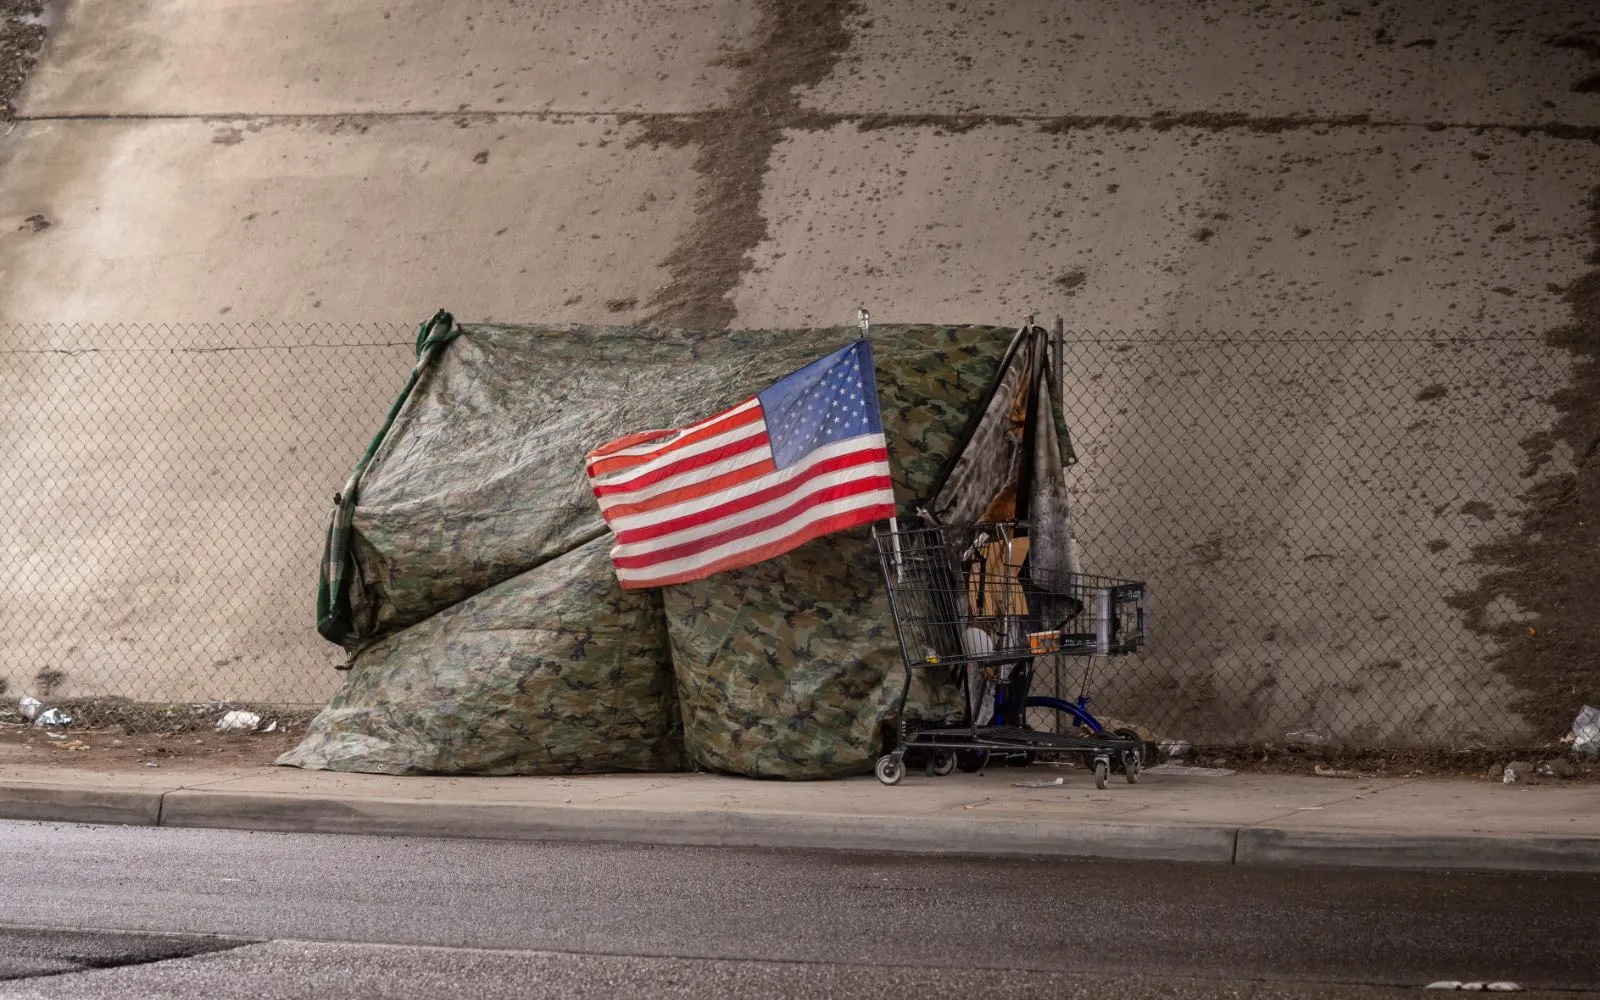 Bandera estadounidense en una tienda de campaña hecha de lona de camuflaje en un paso subterráneo de una carretera.?w=200&h=150